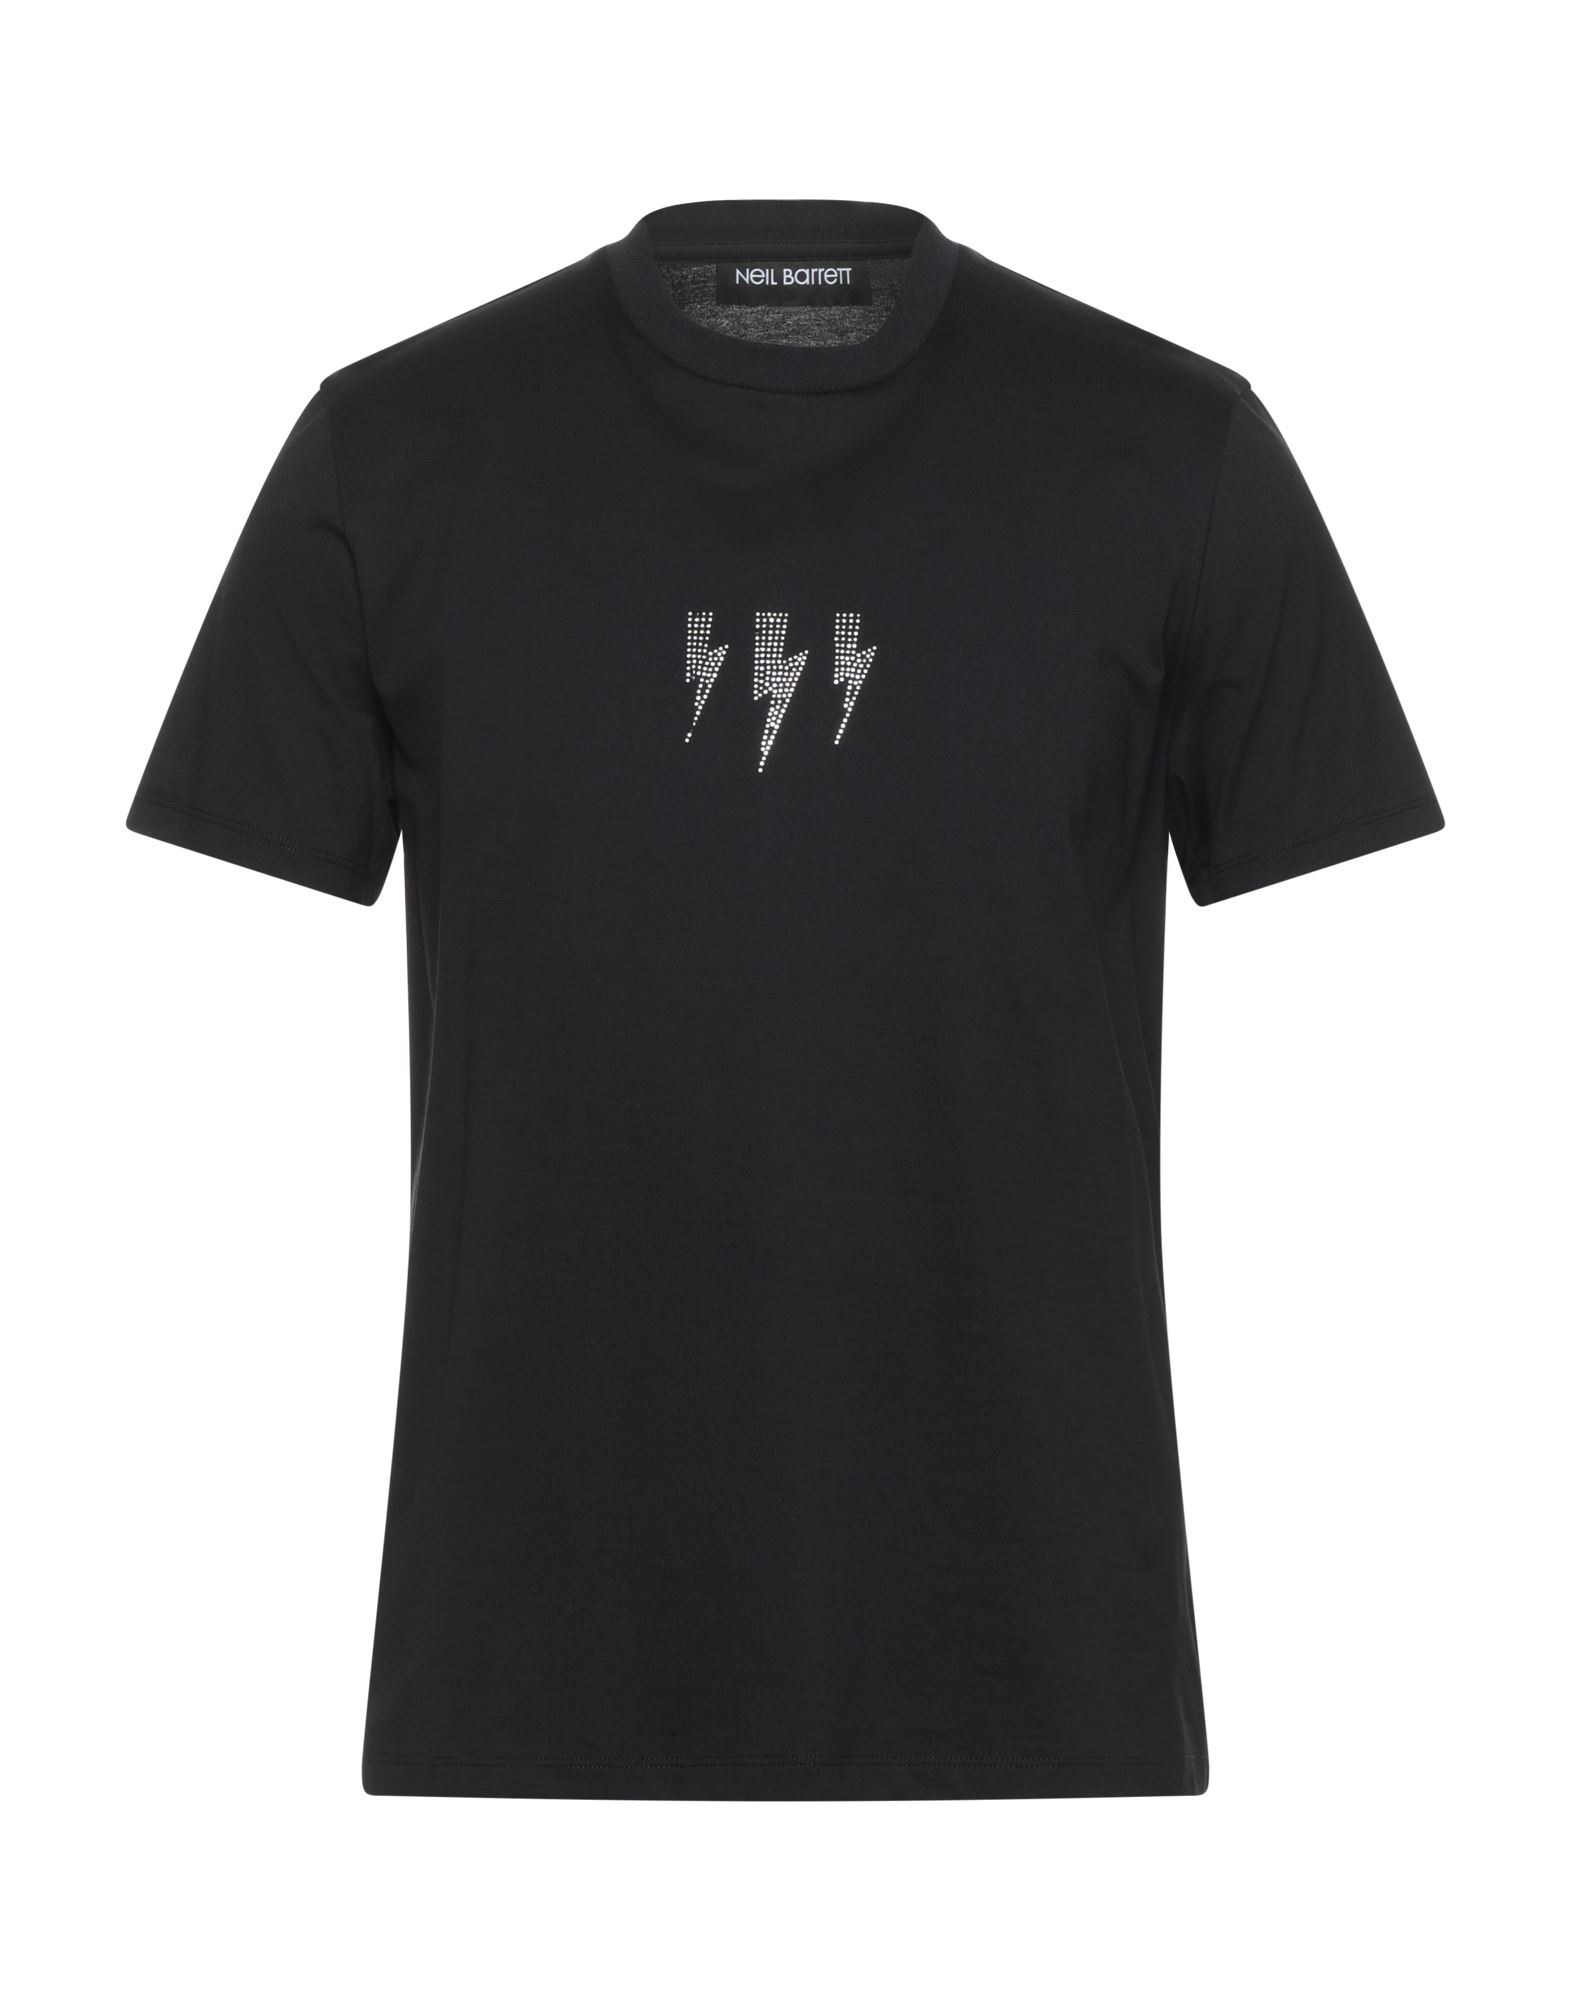 ニールバレット メンズ Tシャツ トップス T-shirt Black